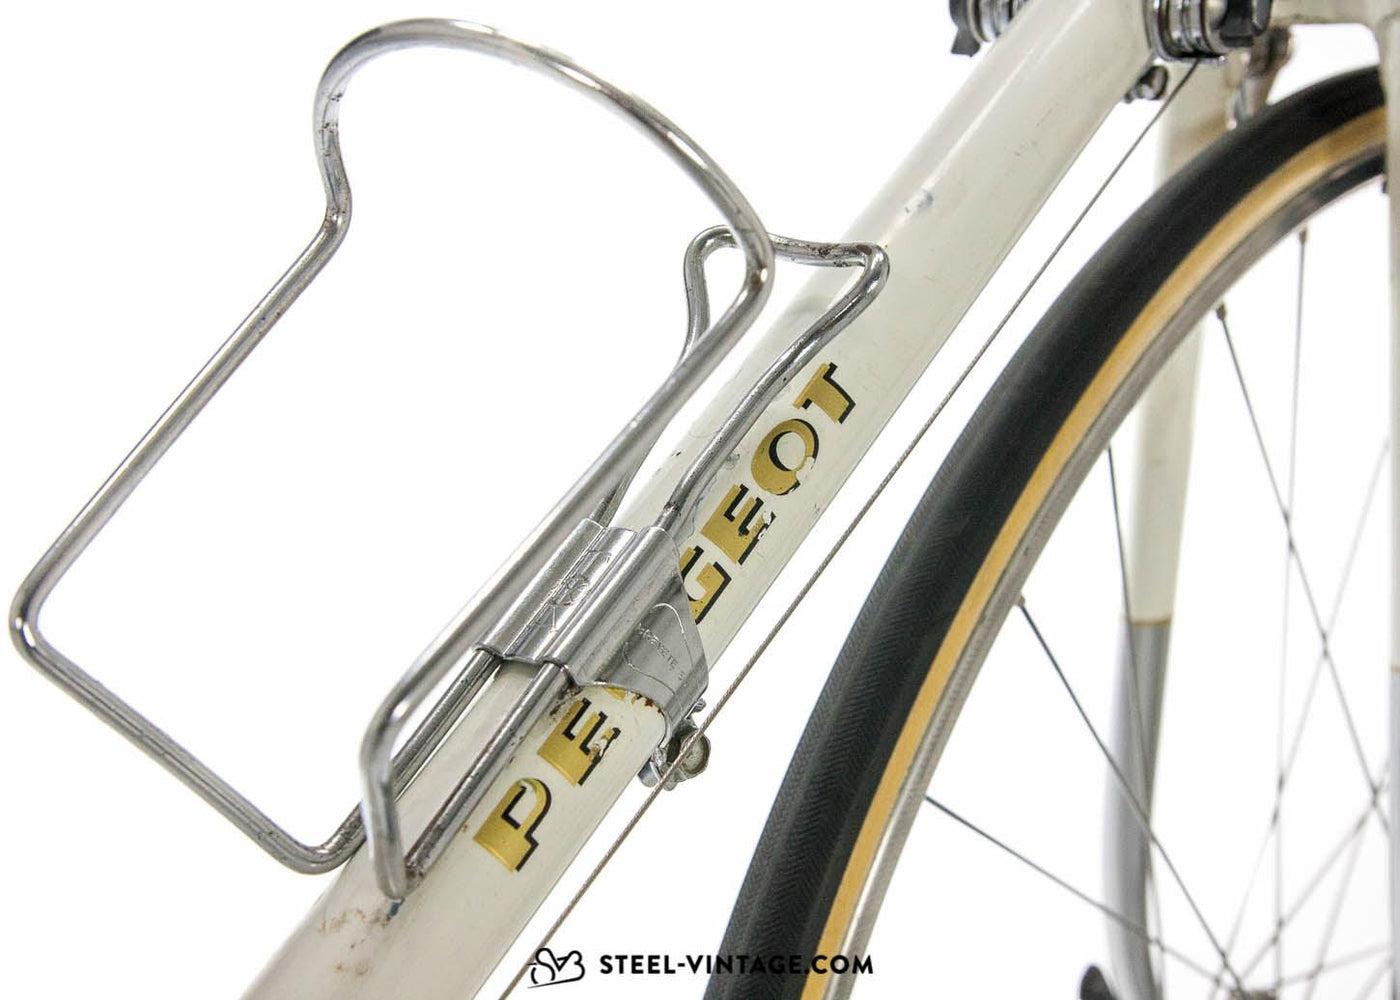 Peugeot PX10 Classic Roadbike 1971 - Steel Vintage Bikes